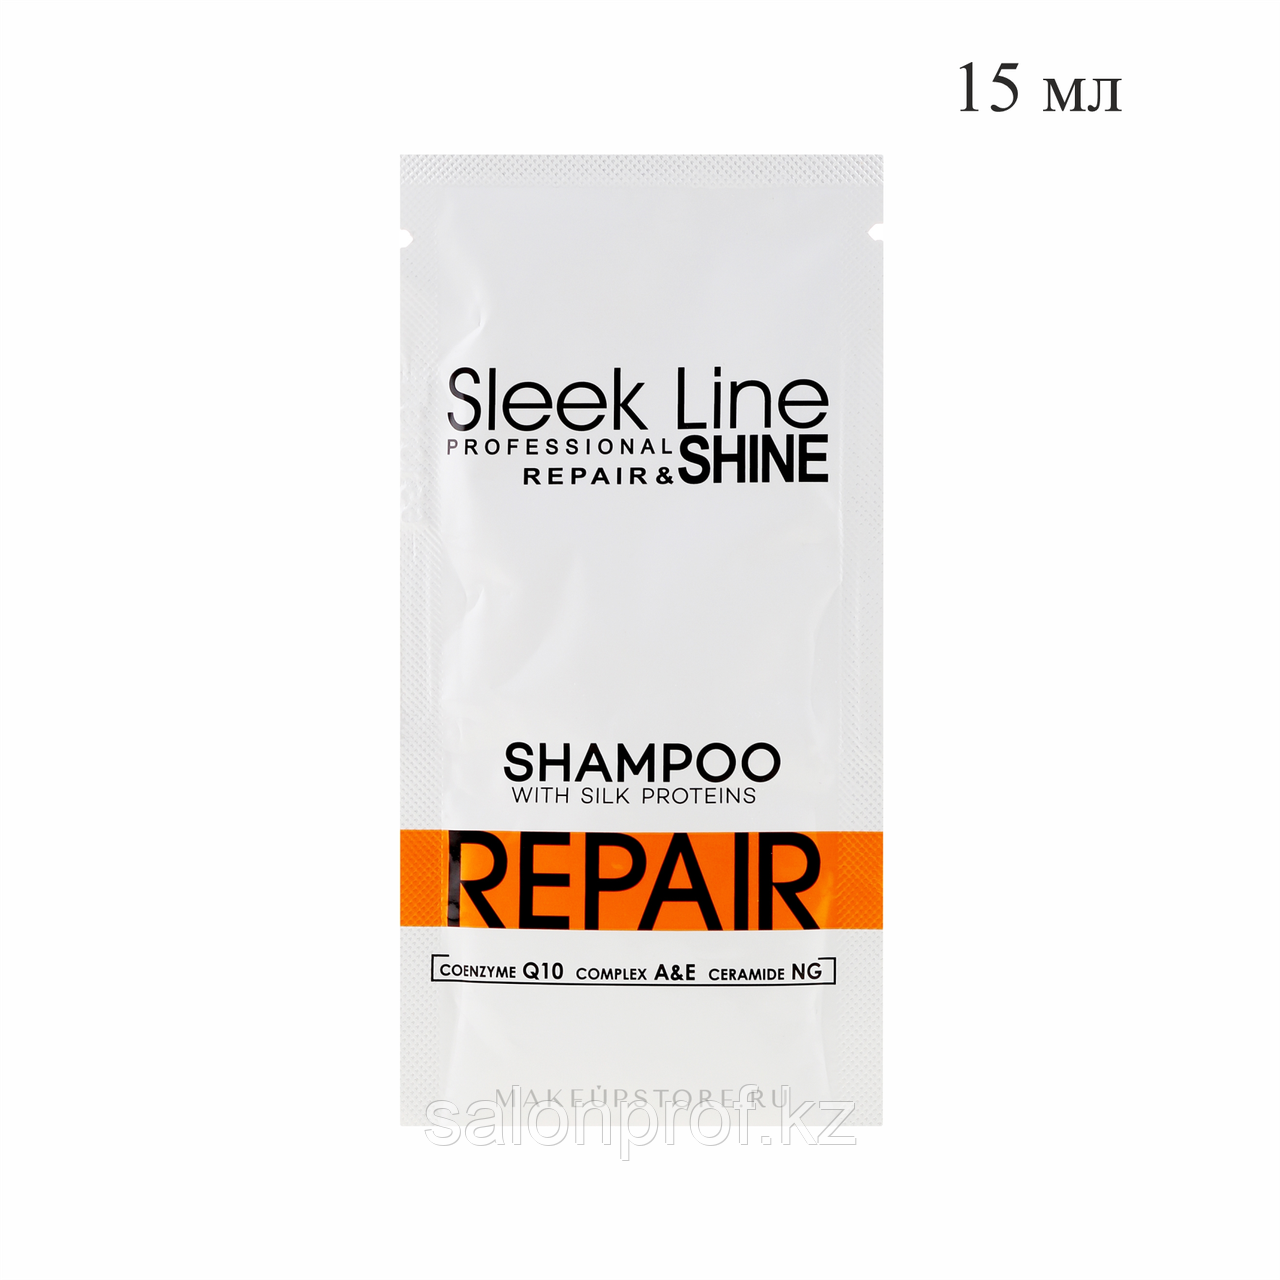 Пробник шампуня для восстановления волос с протеином шелка SLEEK LINE REPAIR 15 мл №50983/10424